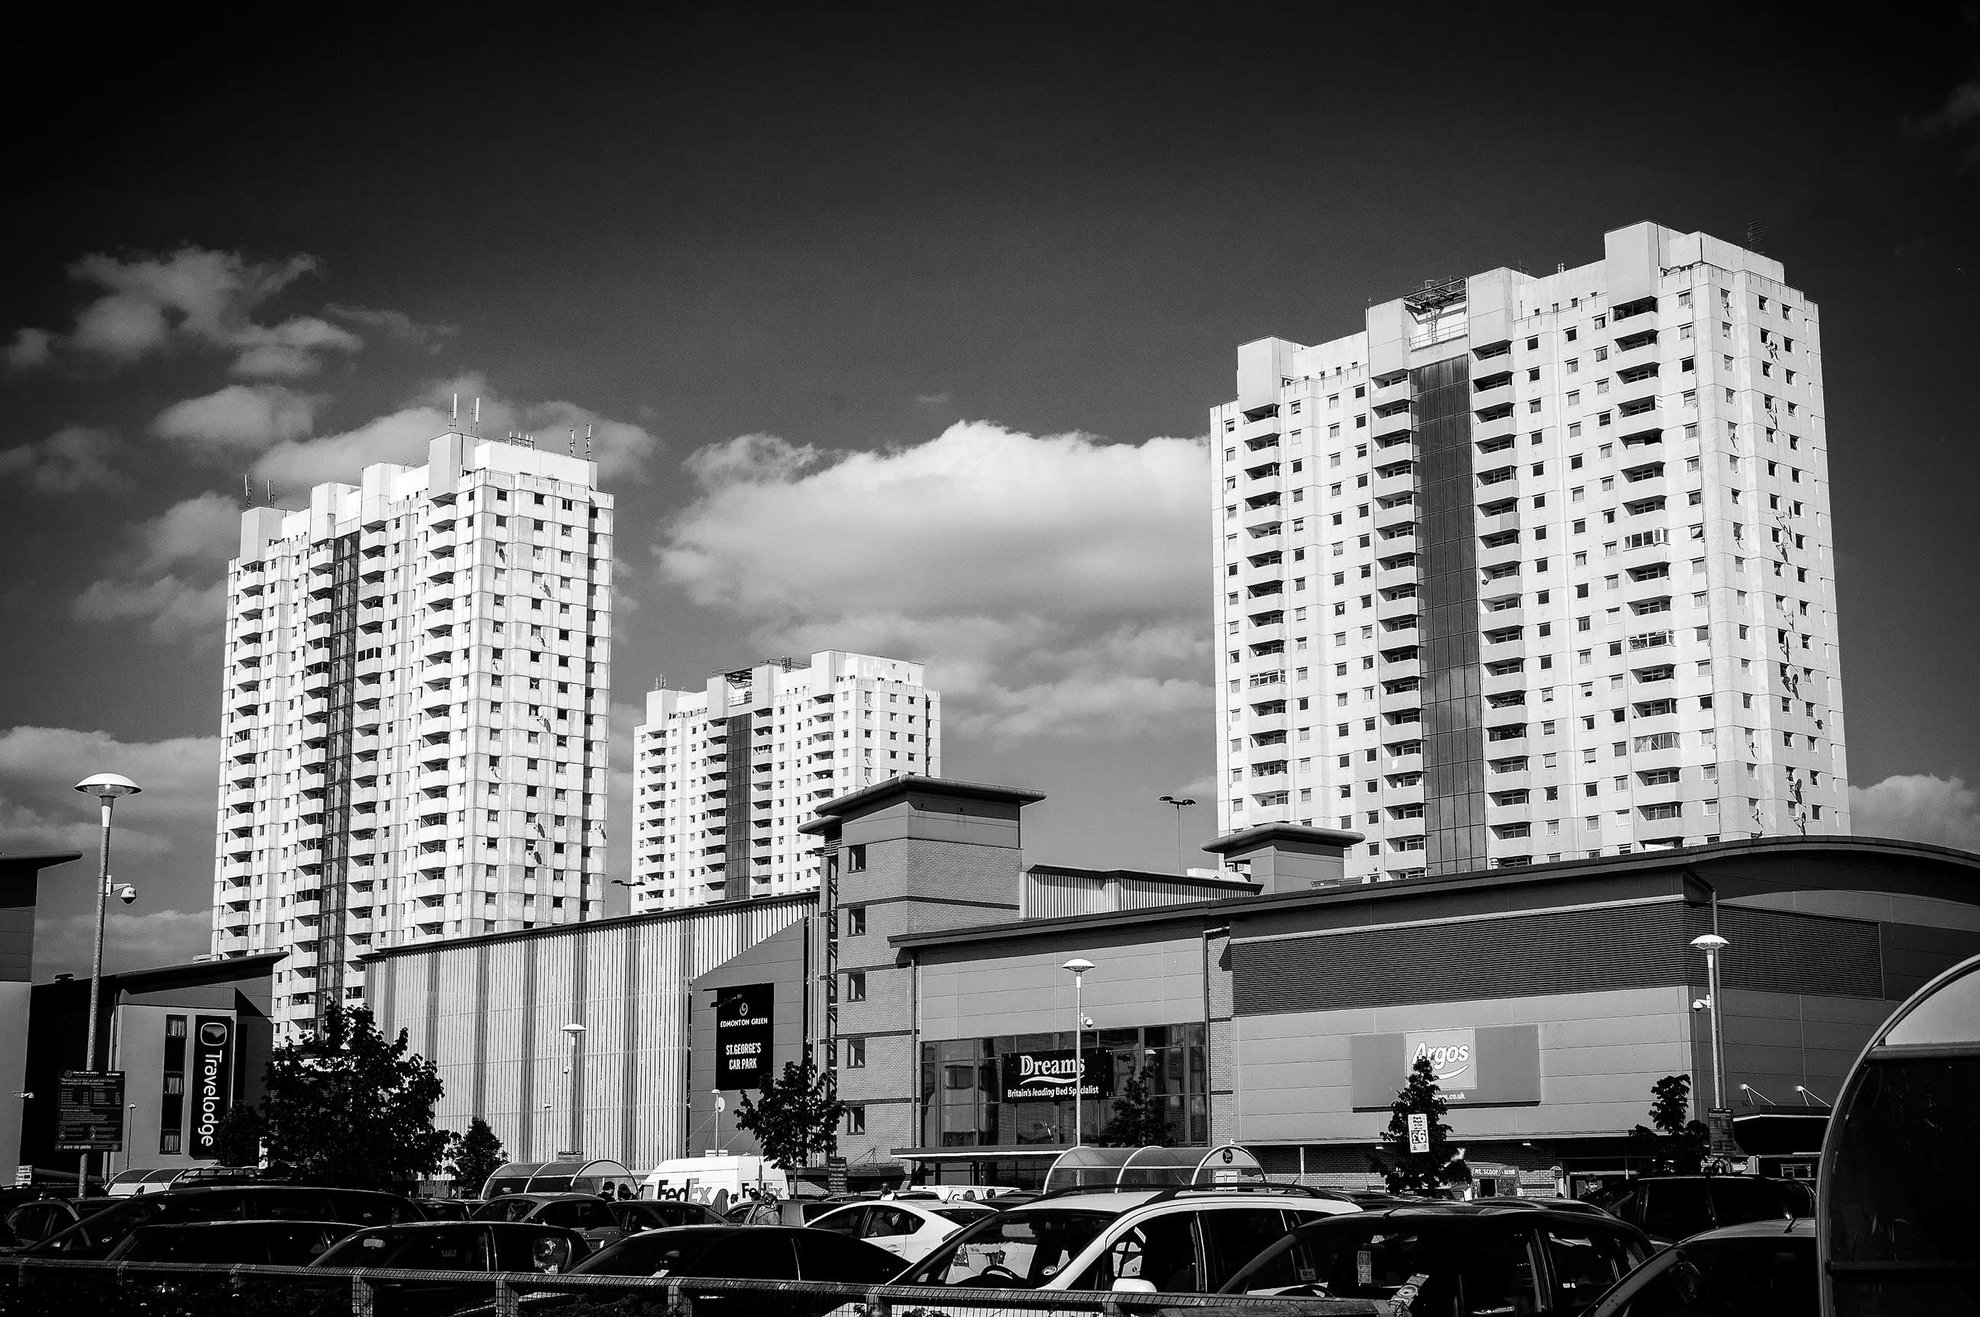 Edmonton Green Shopping Centre and Estate